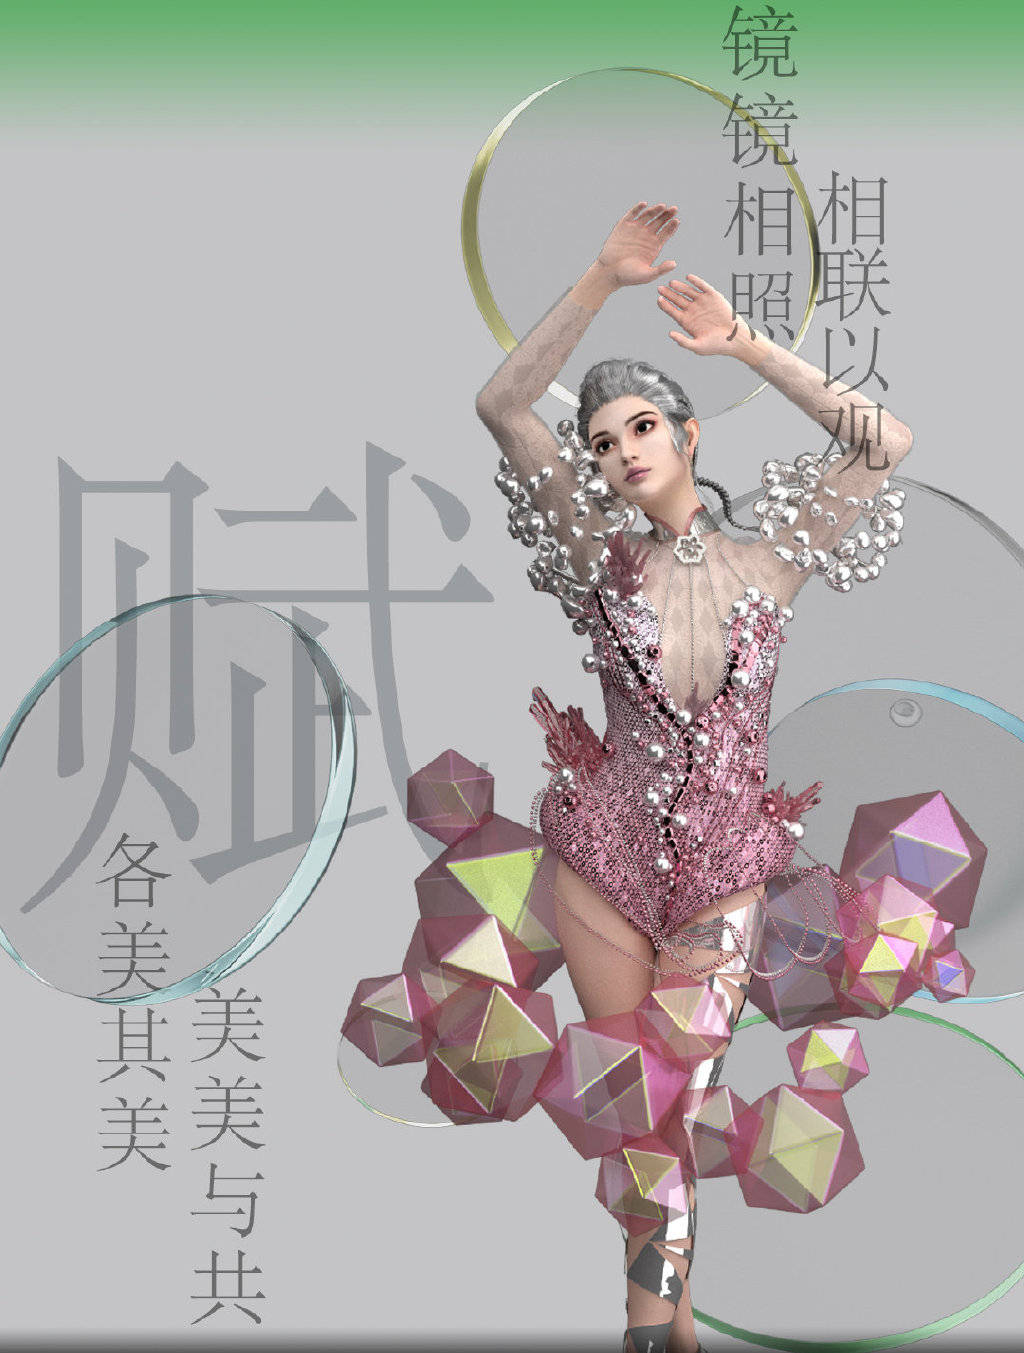 中国时装周海报图片